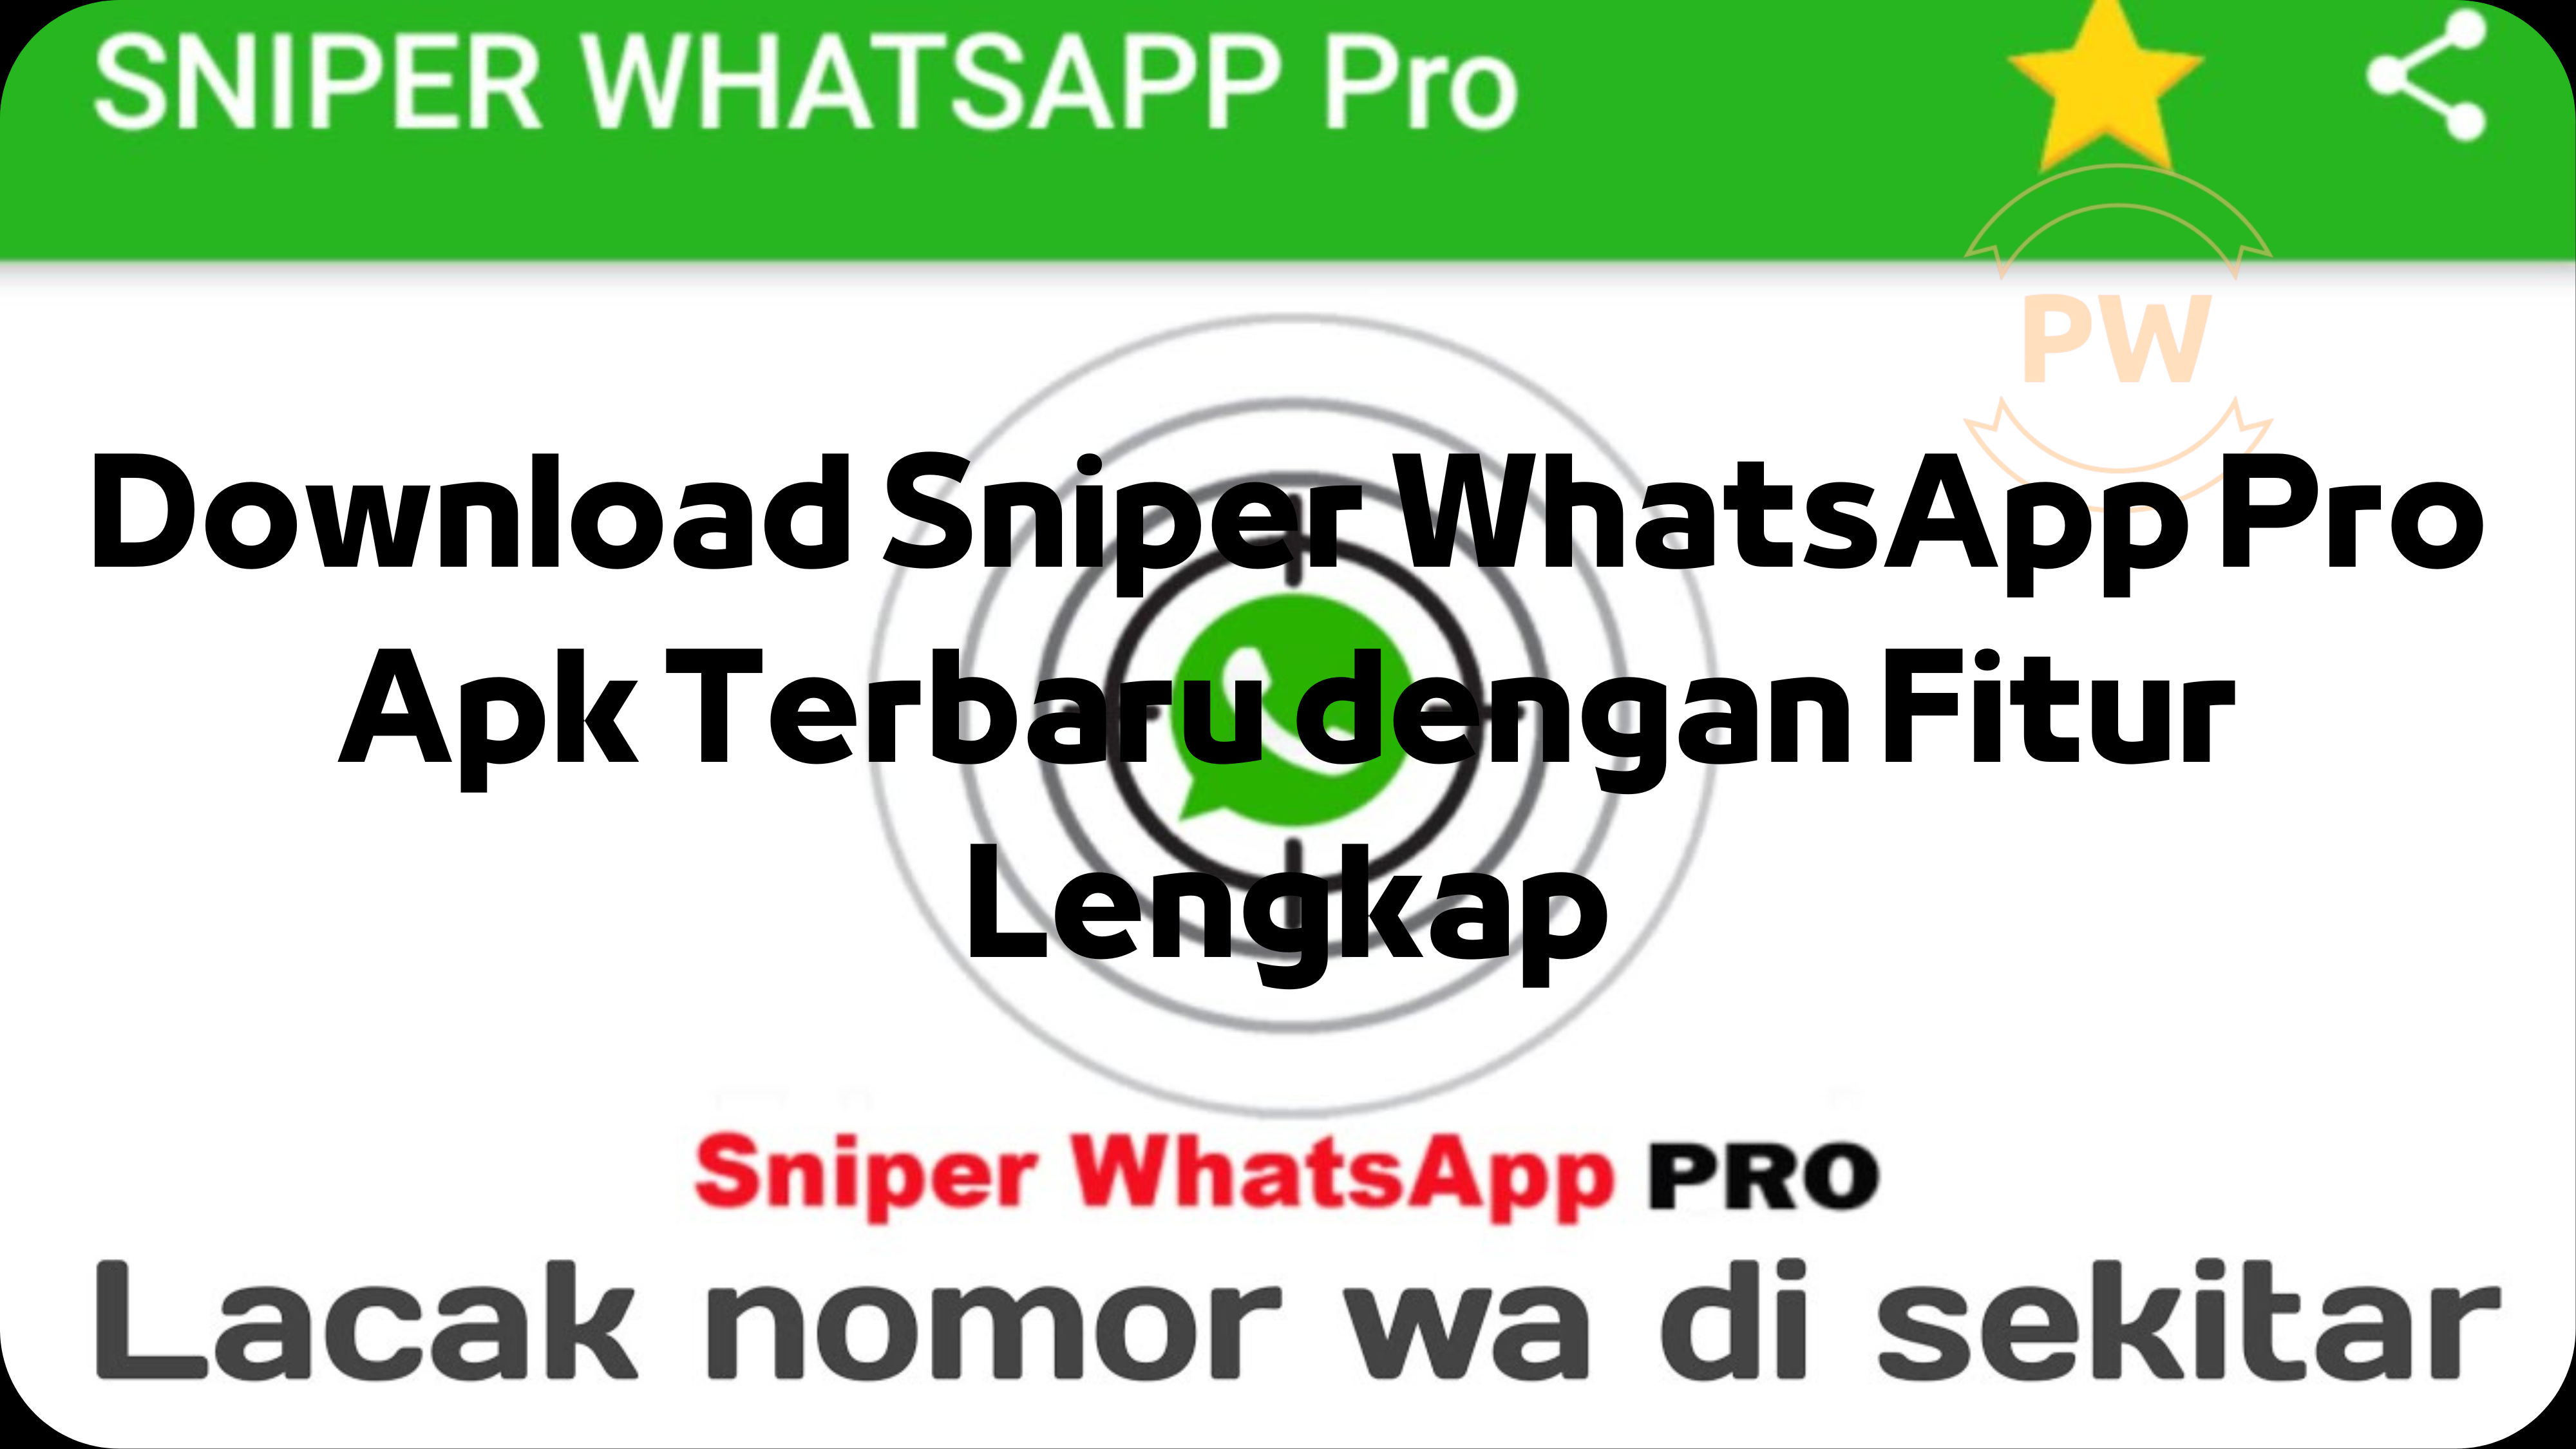 Download Sniper WhatsApp Pro Apk Terbaru dengan Fitur Lengkap